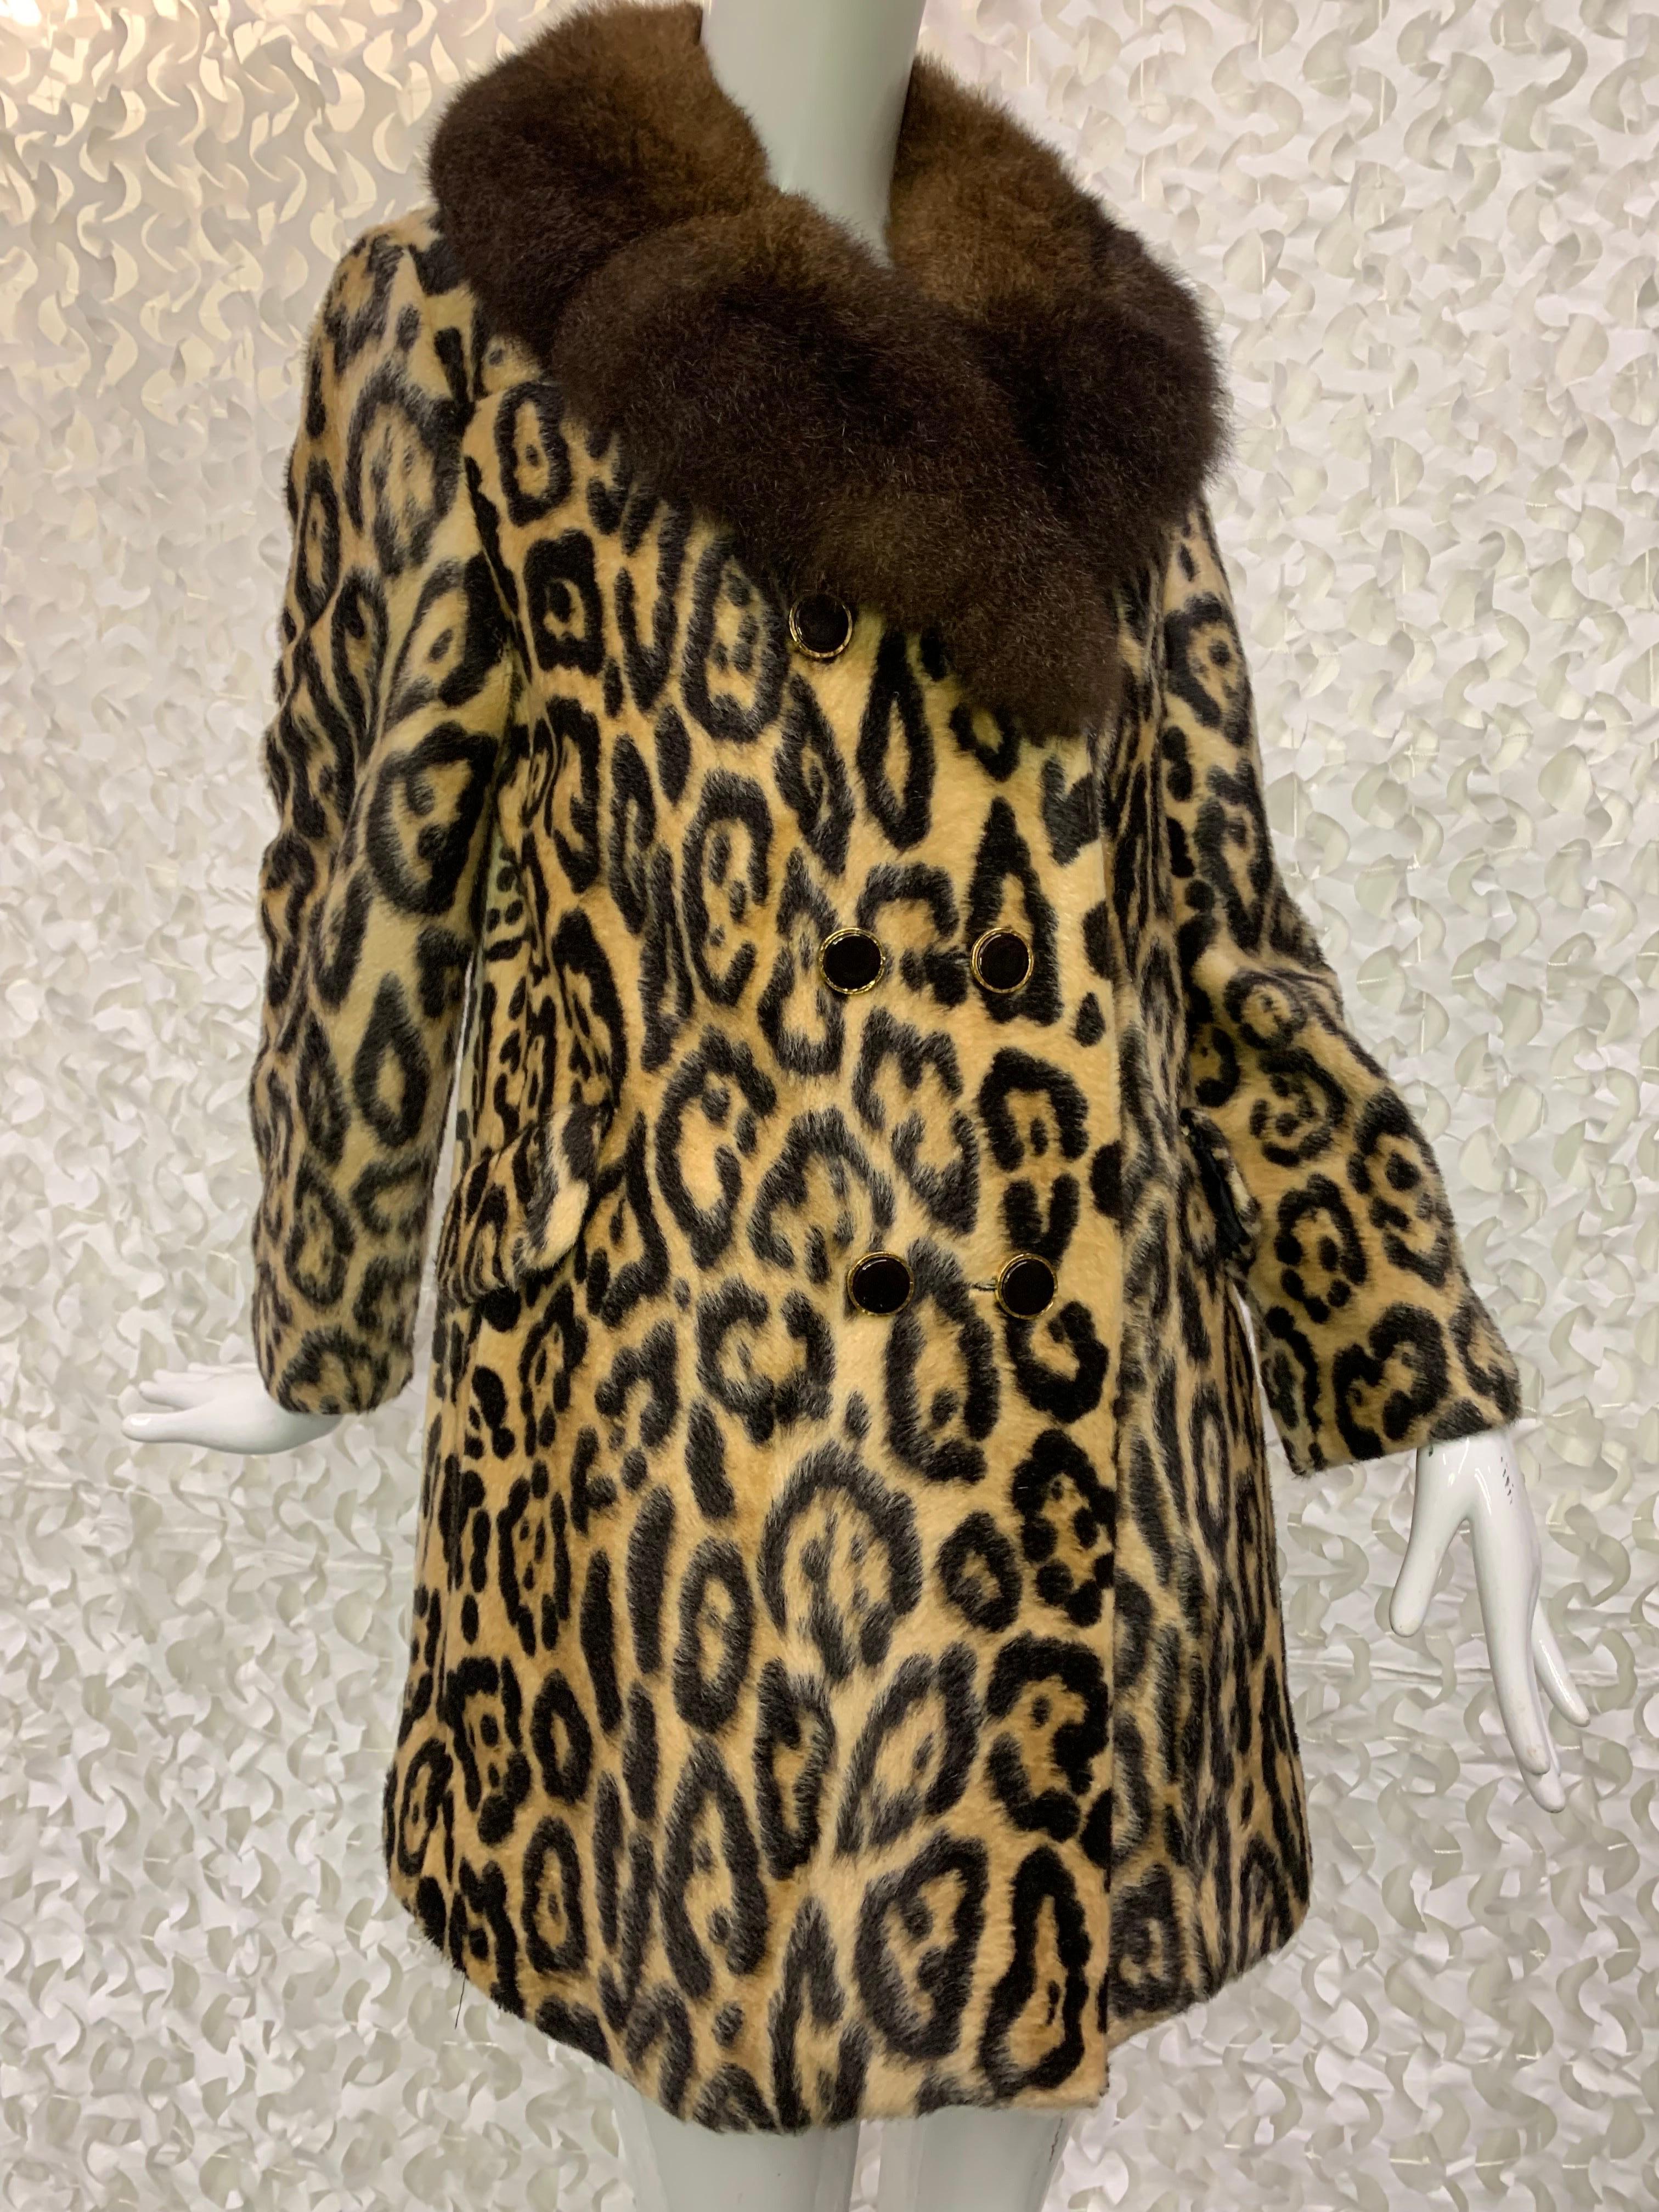 Manteau à double boutonnage en fausse fourrure léopard avec col en fourrure luxuriante, Robert Meshekoff, années 1960 : Manteau décontracté de la longueur du bout des doigts avec des boutons noirs et dorés et un col cranté en fourrure d'opossum.